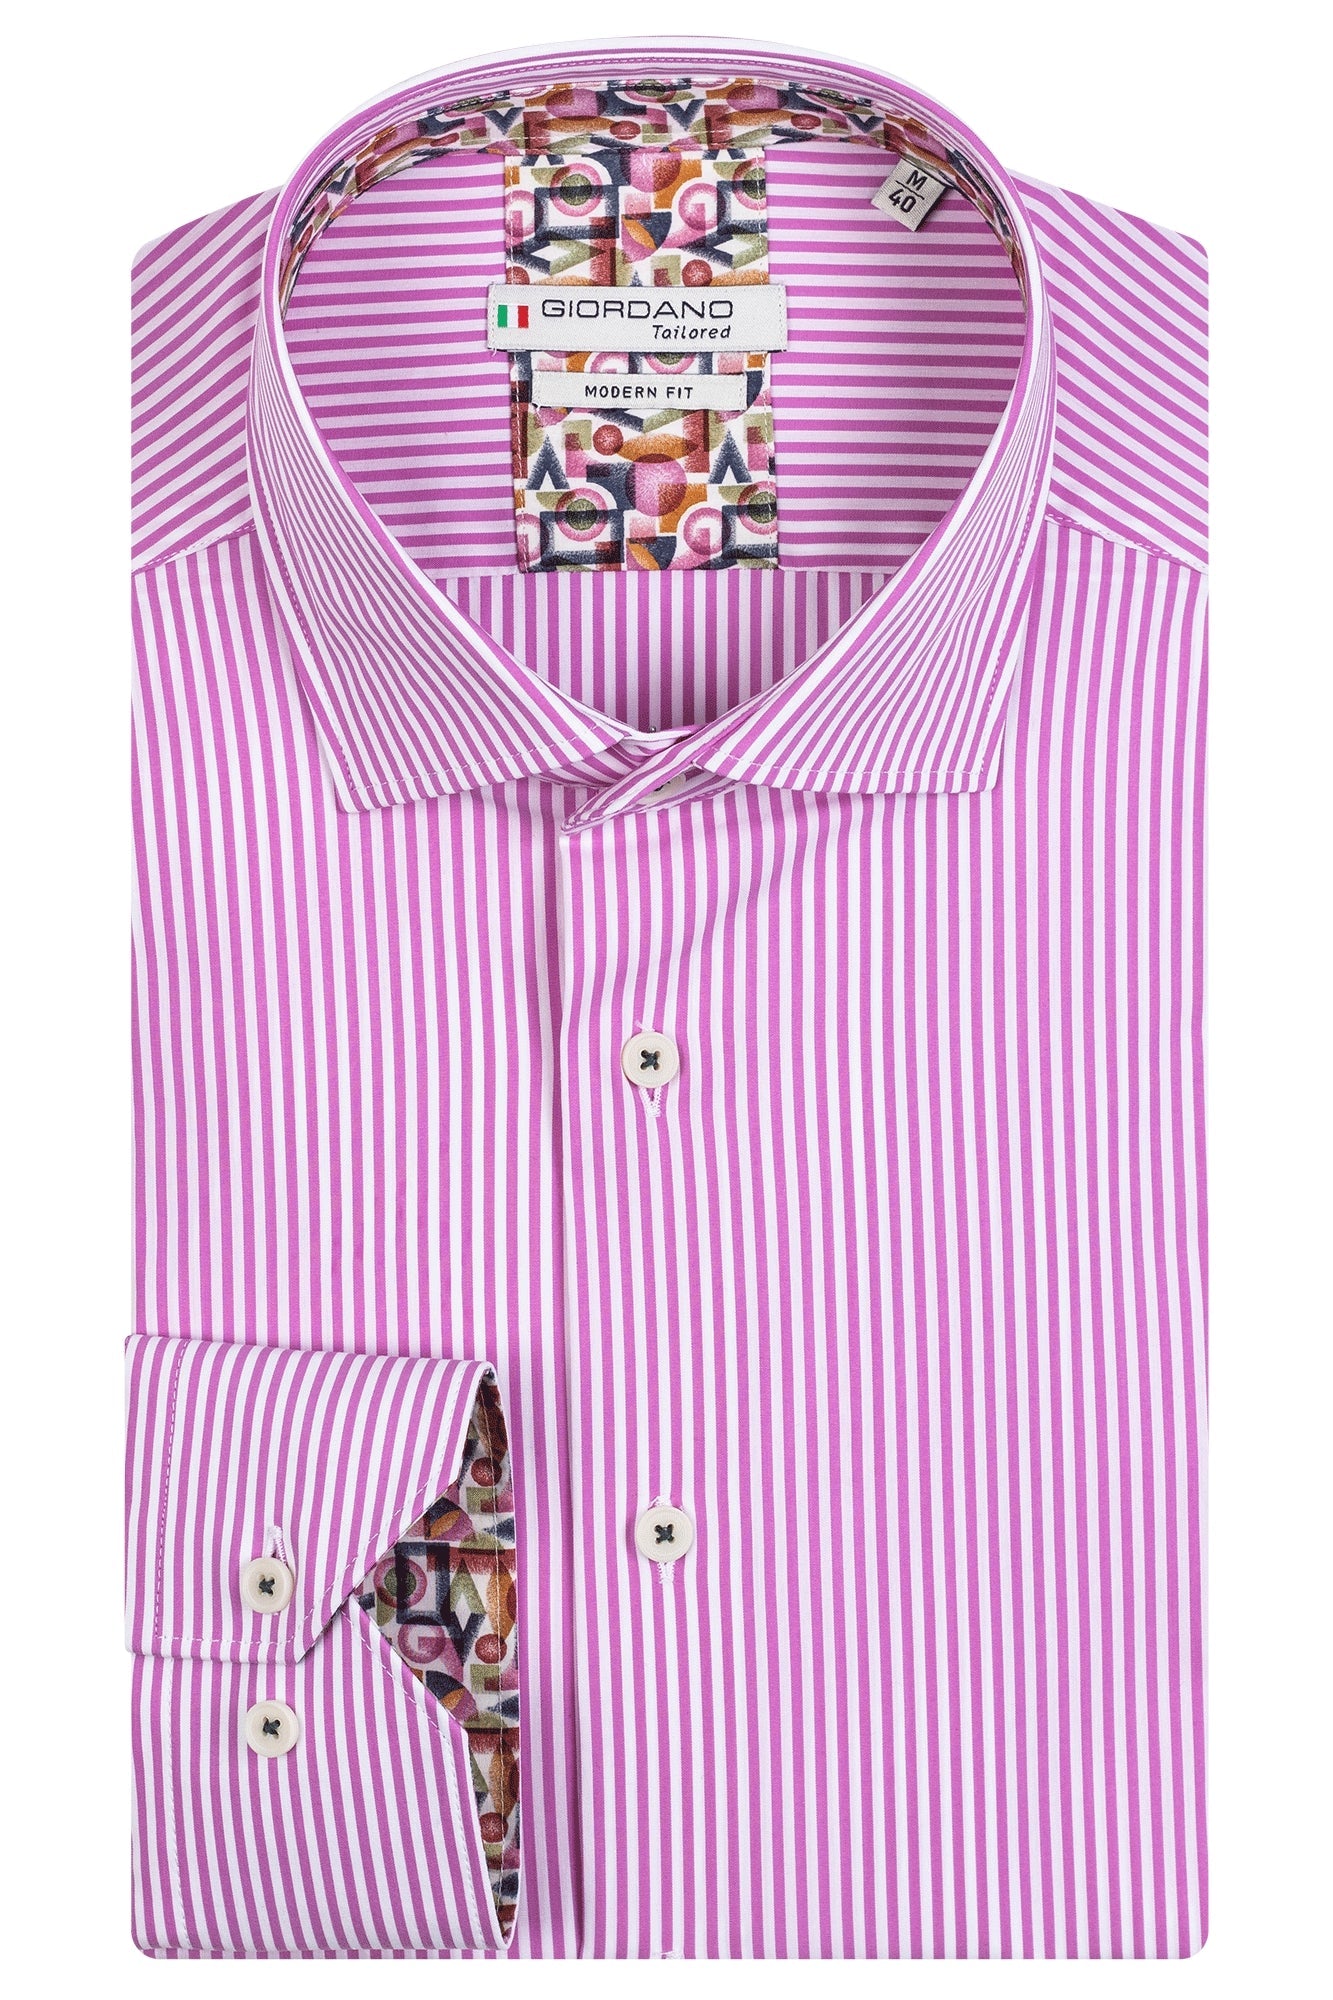 Men's Twill Cotton Light Pink Shirt | Luxury Shirts | StylishGuy –  StylishGuy Menswear